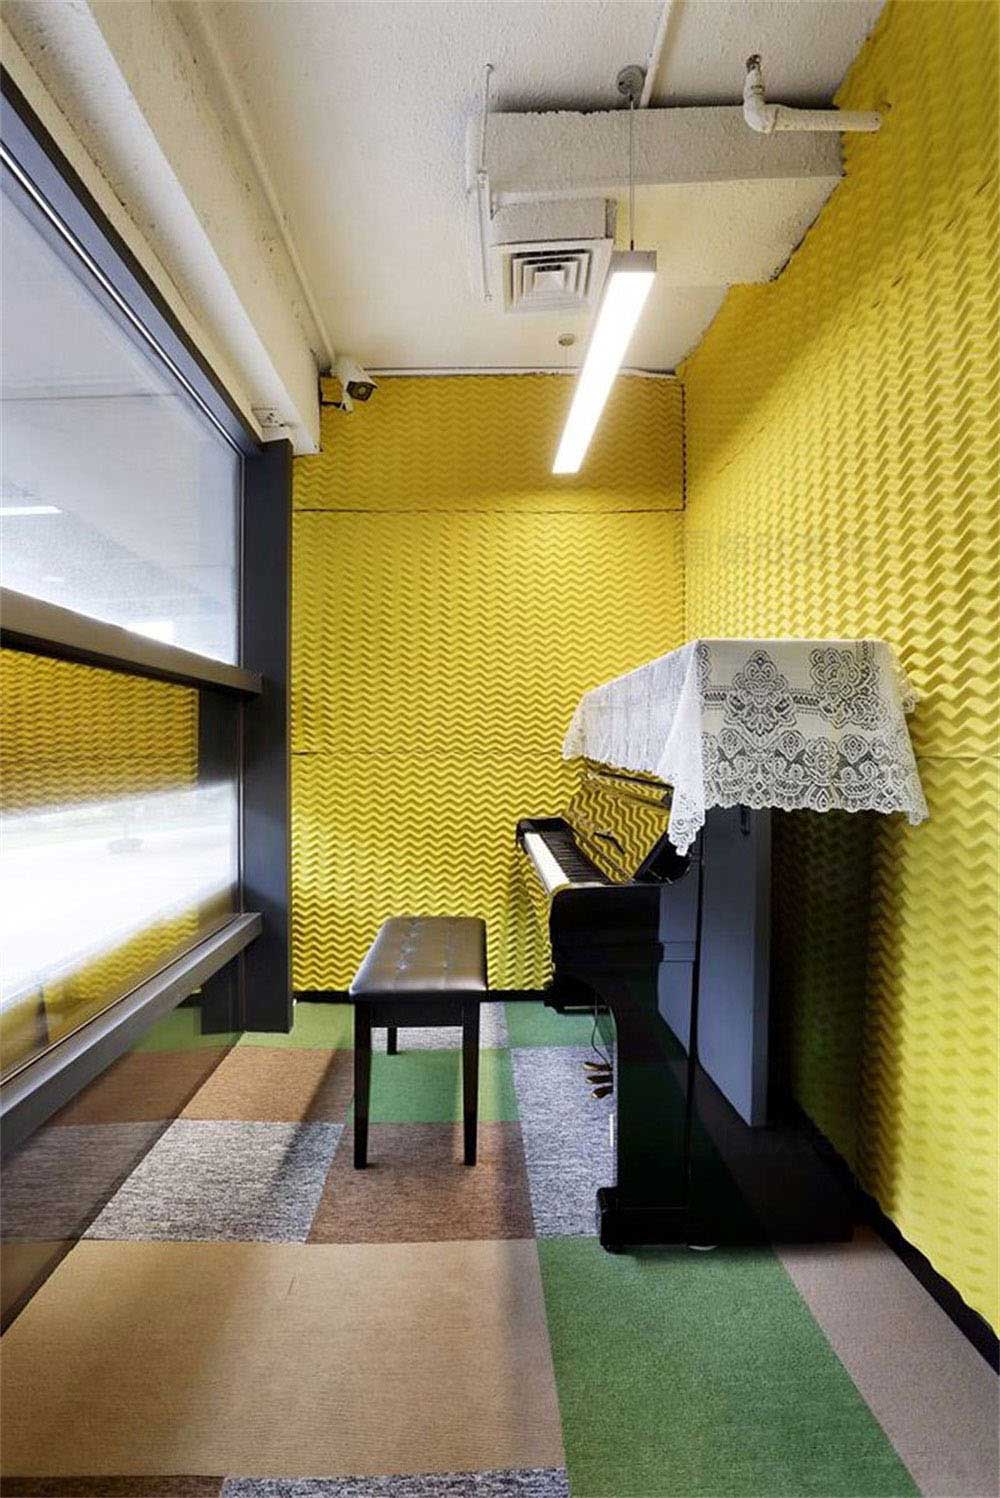 深圳市龙华区观澜洛德音乐培训中心钢琴室